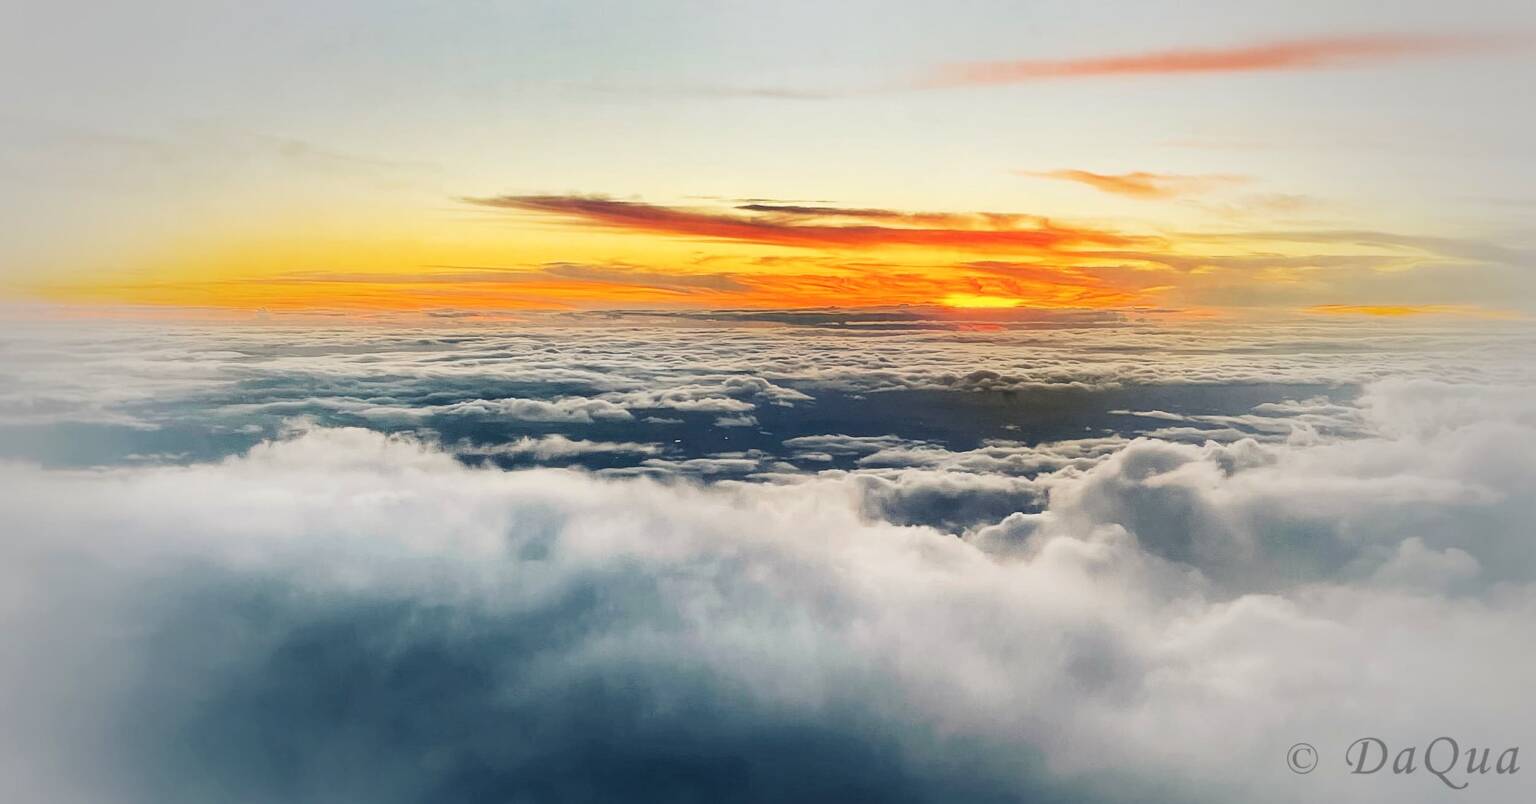 Aerial sunrise above the clouds by Da Qua